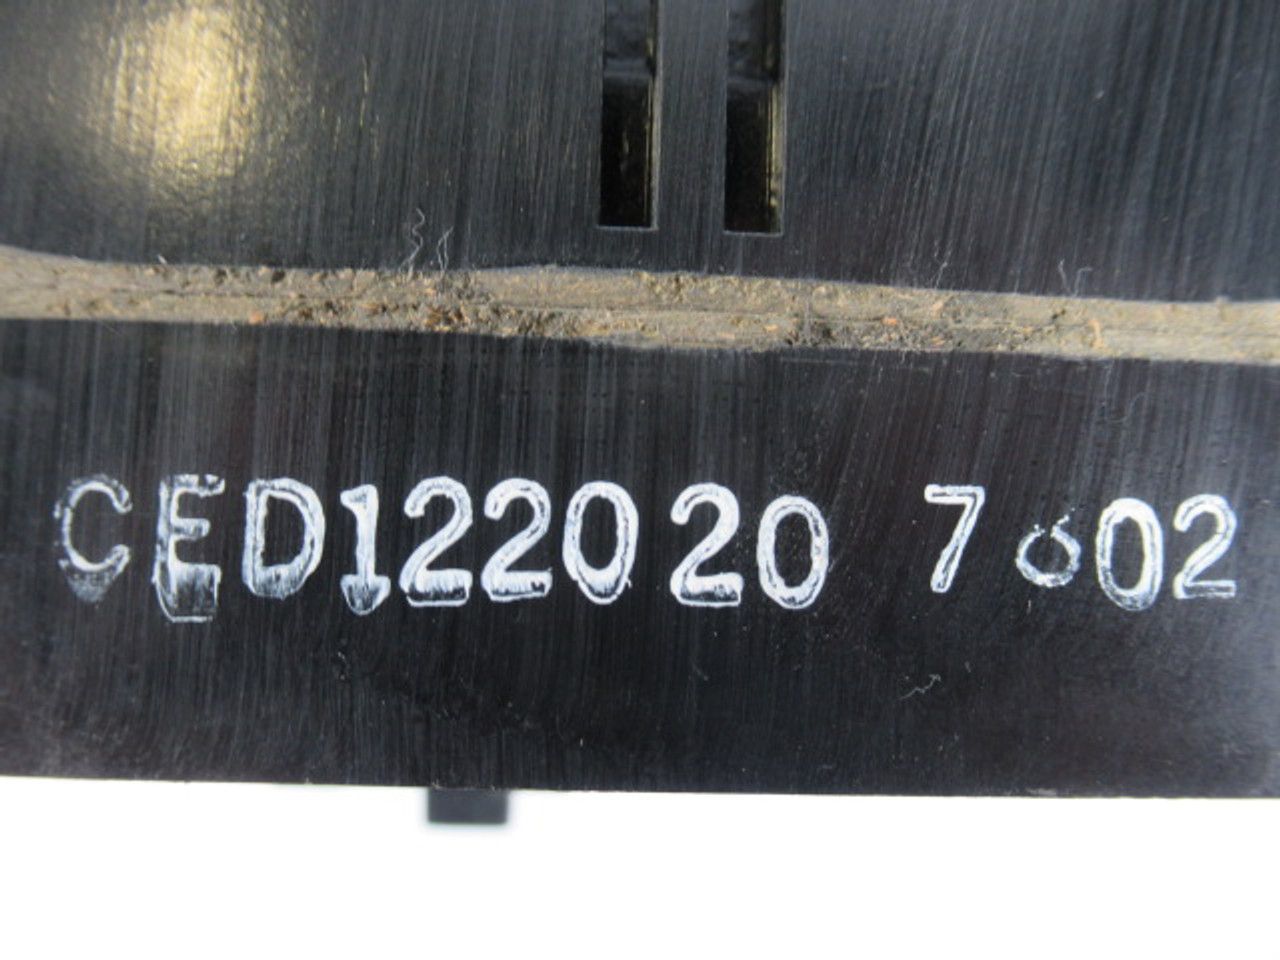 Federal Pioneer CED122020 Circuit Breaker 20A 2P Missing 2 Screws USED